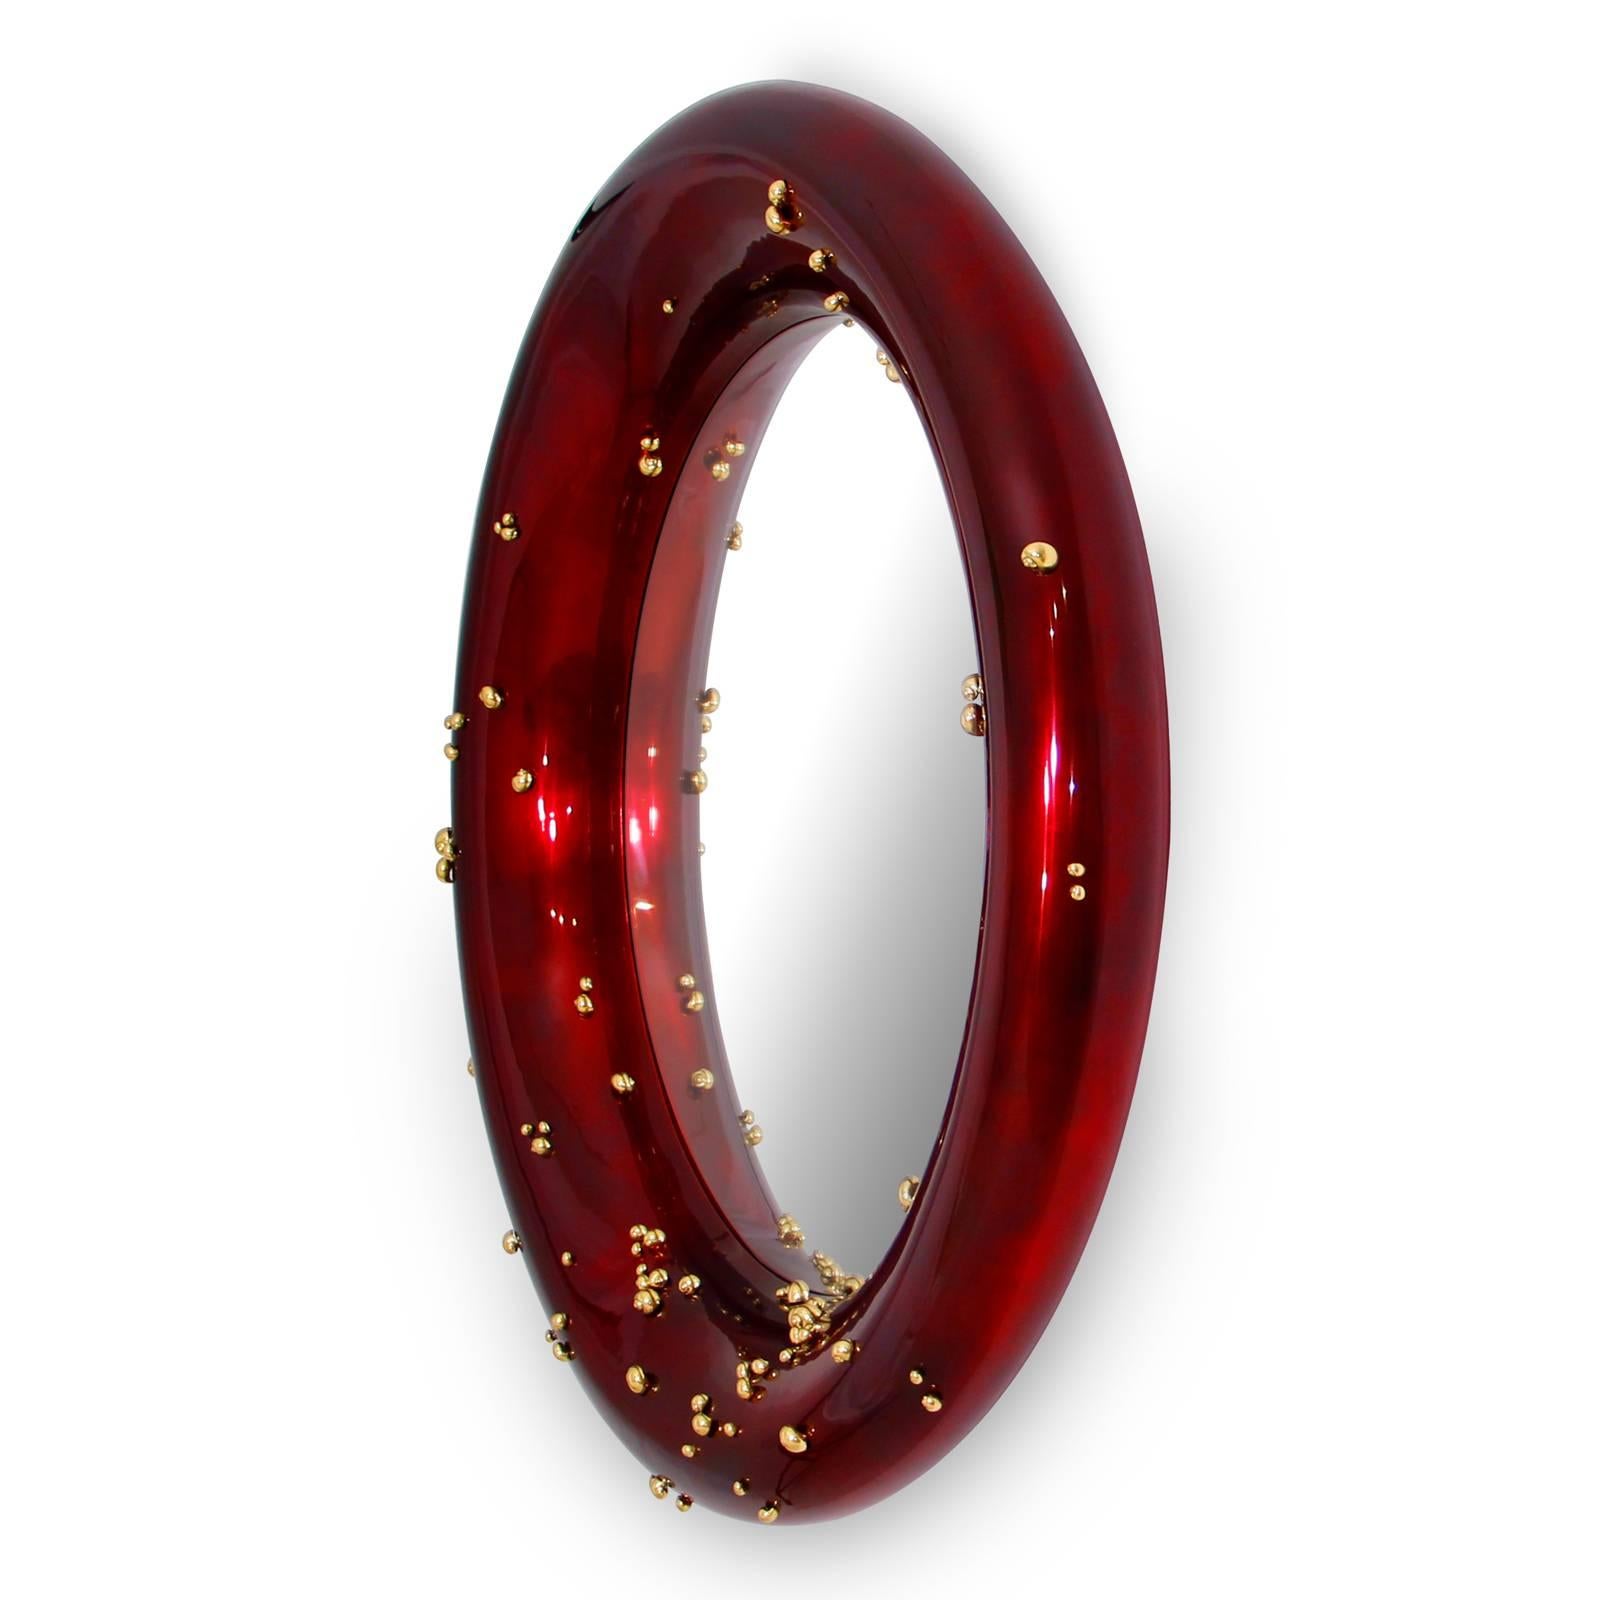 Miroir rouge avec cadre en bois sculpté avec
rouge-foncé brillant verni avec rond transparent 
verre miroir. Décoré de petits escargots en
laiton massif poli tout autour du cadre.
